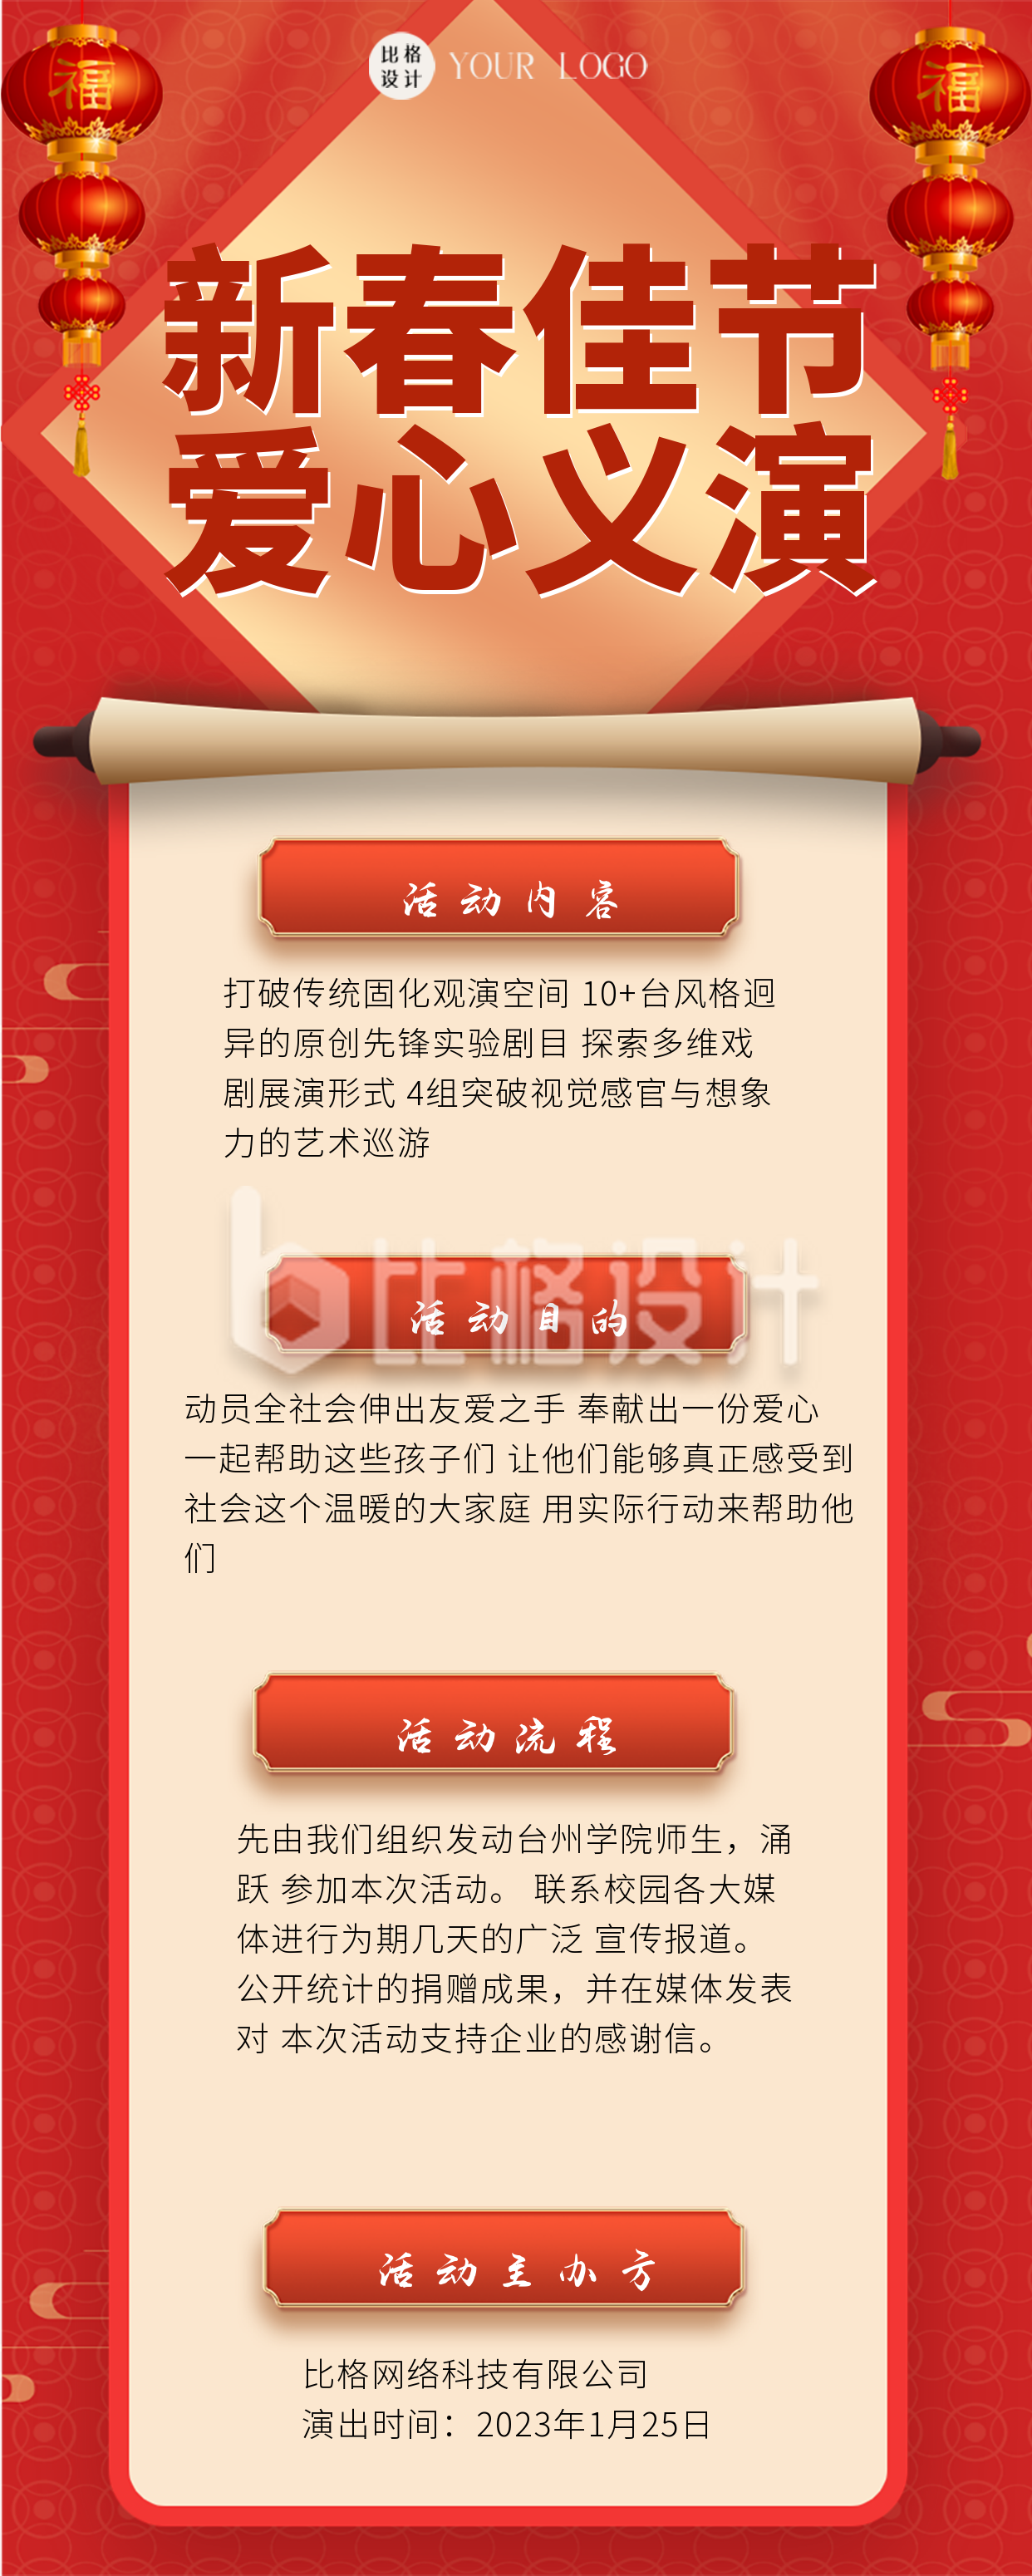 春节爱心义演活动红色喜庆宣传长图海报